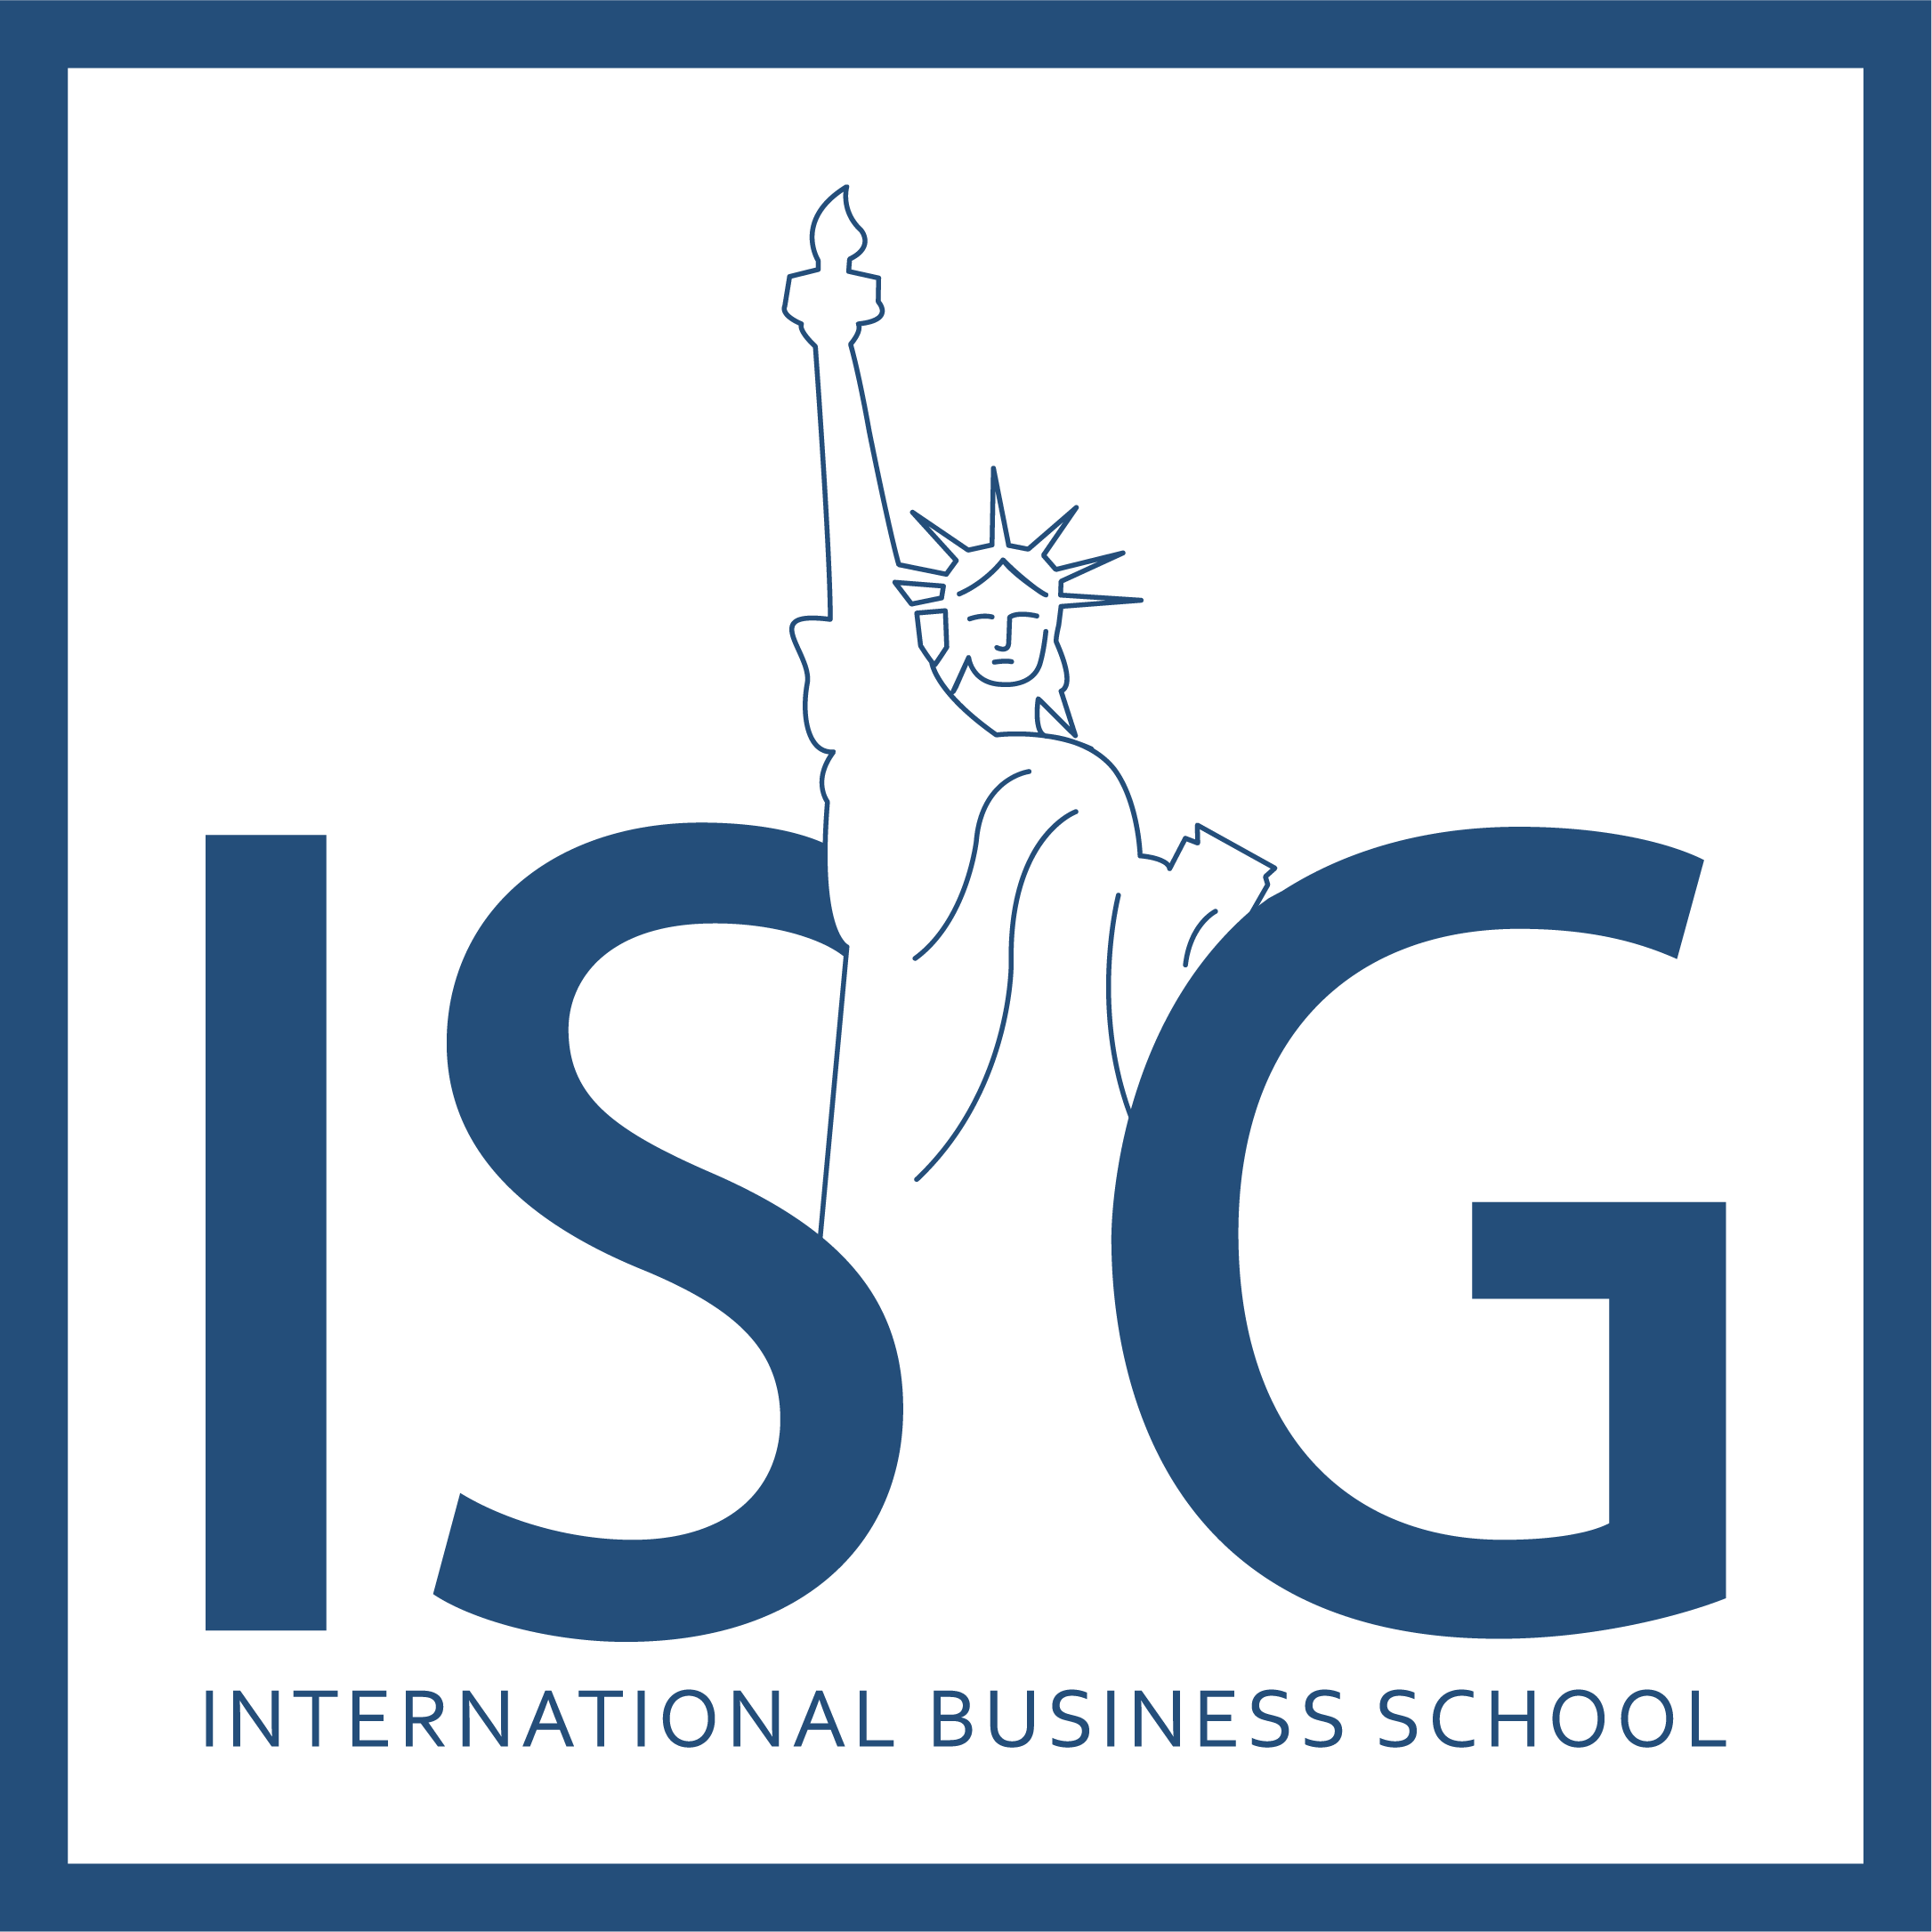 Logo ISG - International Business School : lettres "ISG" en lettres stylisées, sur fond transparent.0